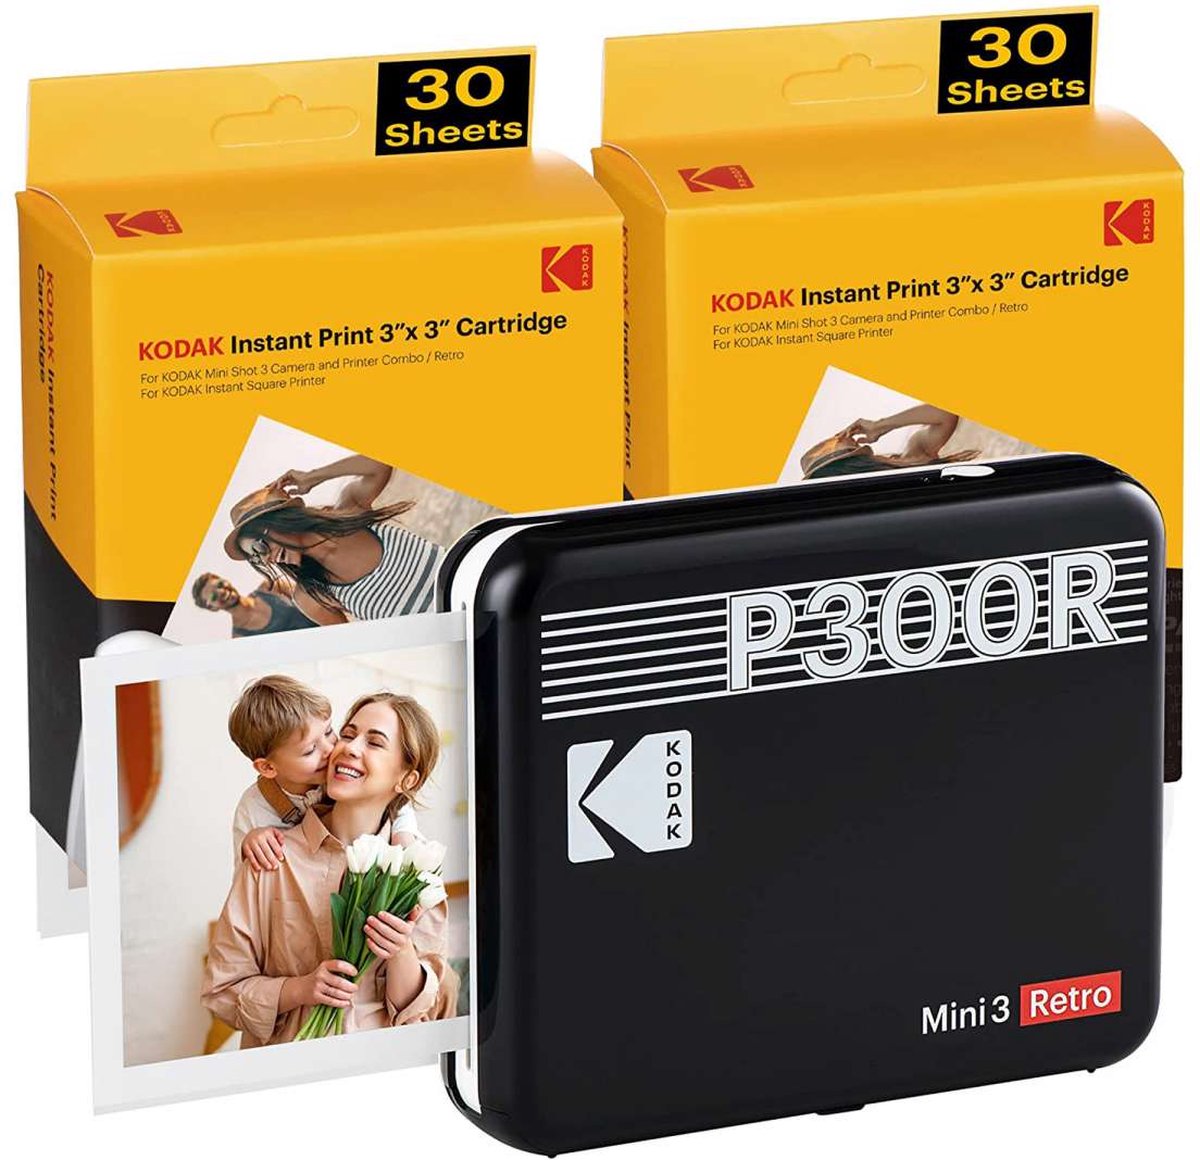 Kodak Mini 2 Retro P210r Portable Photo Printer Noir - Imprimante